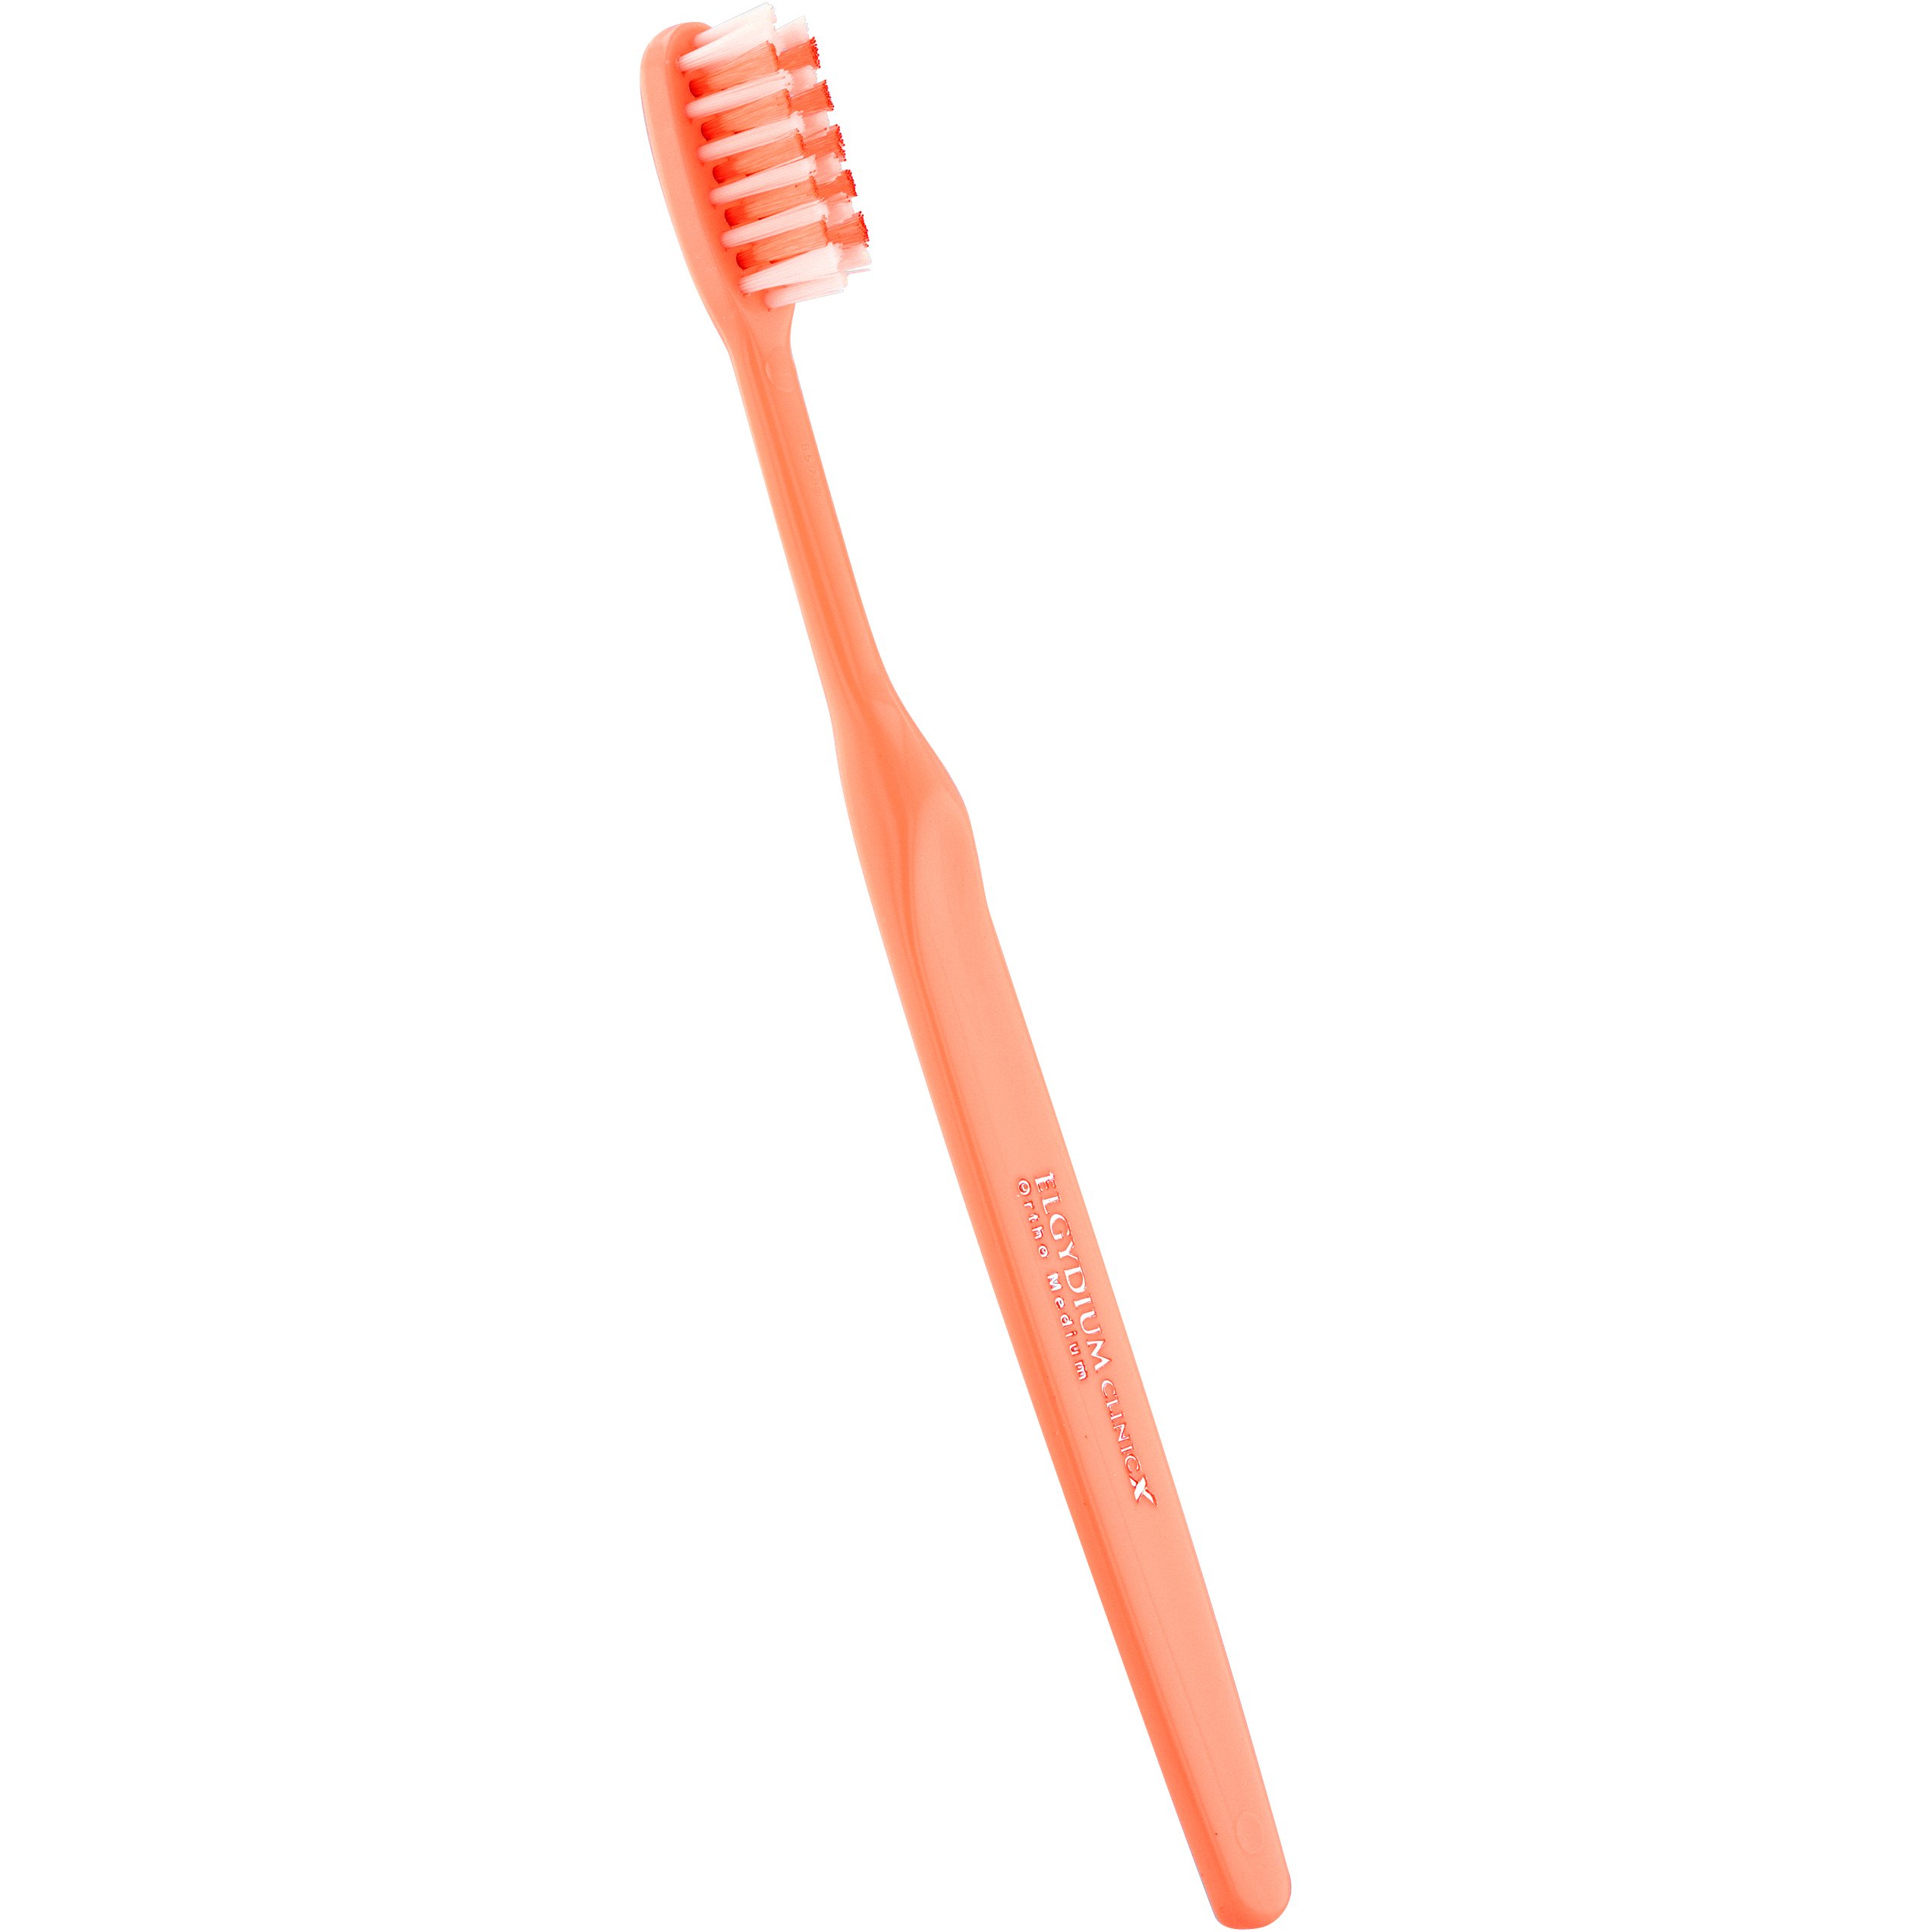 Elgydium Clinic Ortho-X Medium Toothbrush Χειροκίνητη Οδοντόβουρτσα Μέτριας Σκληρότητας Κατάλληλη για Καθαρισμό Ορθοδοντικών Μηχανισμών 1 Τεμάχιο – Πορτοκαλί